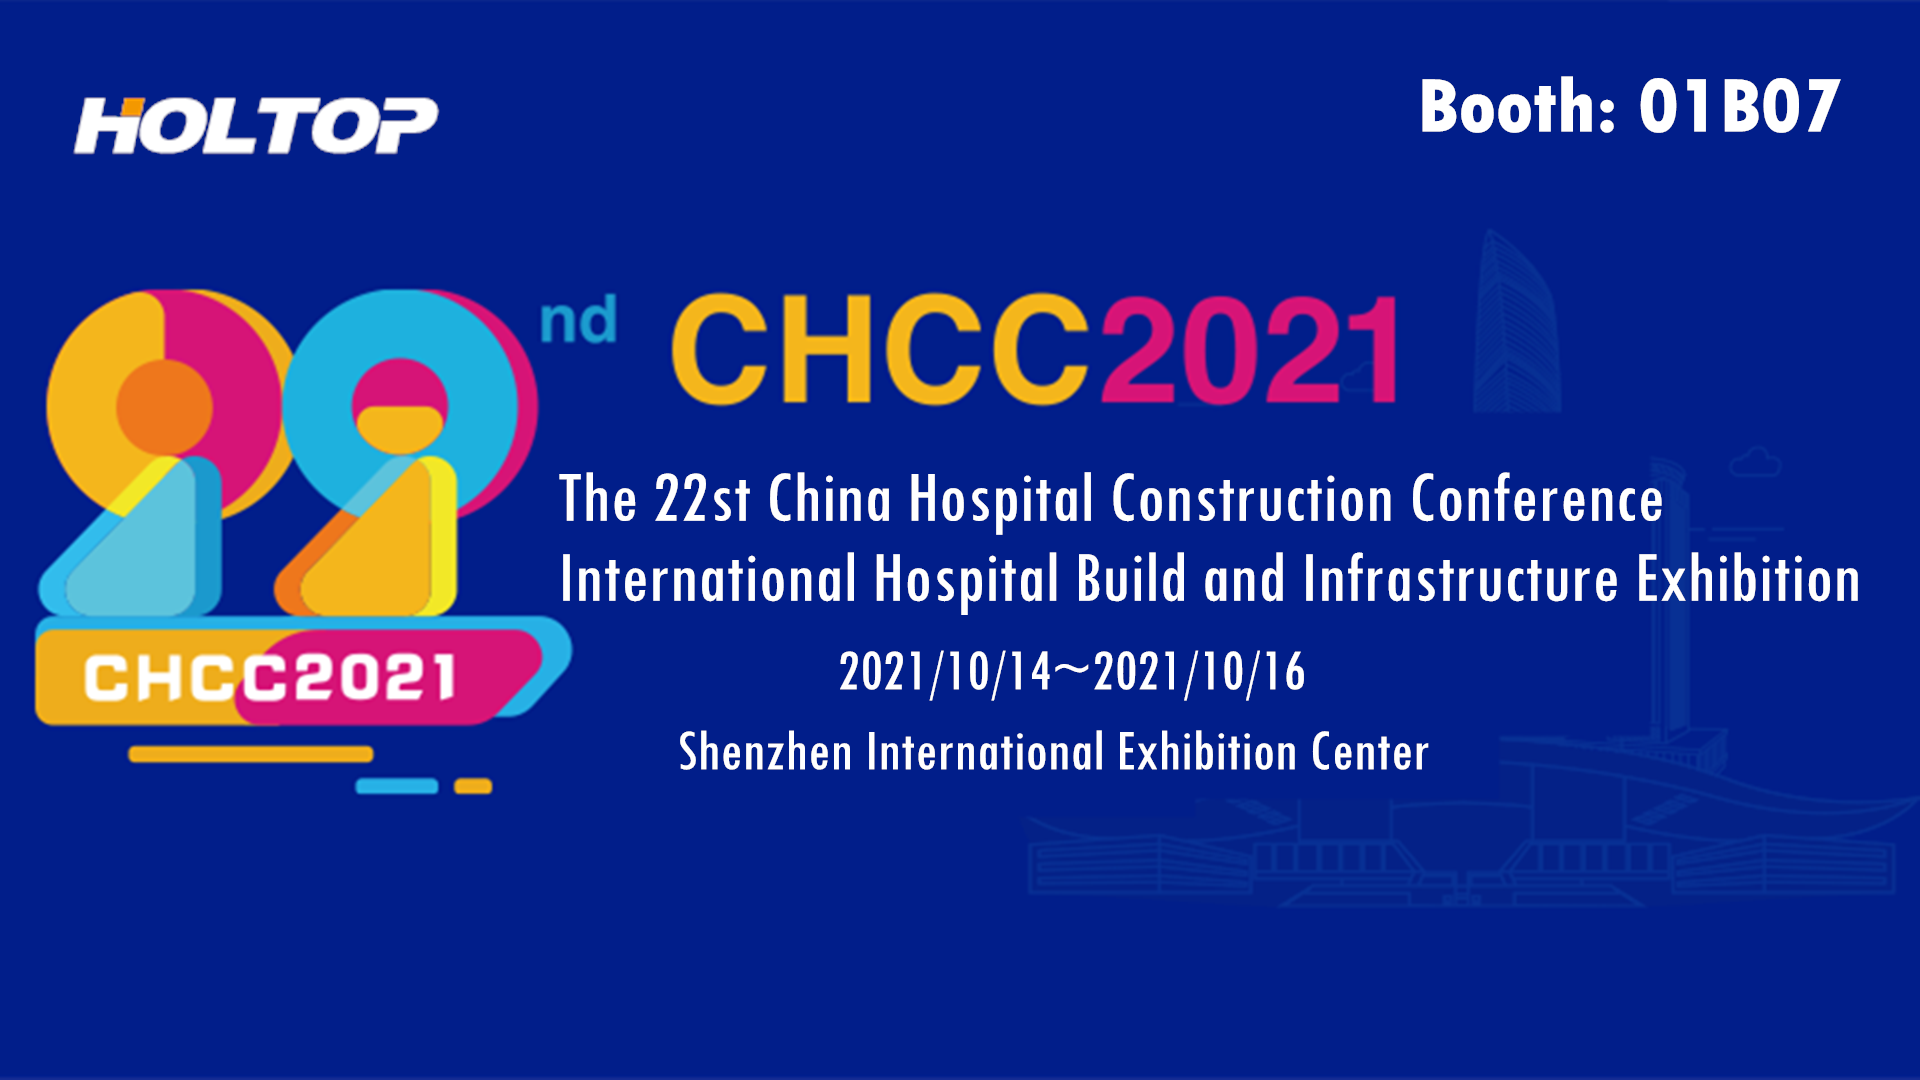 Holtop participa da 22ª Exposição Internacional de Construção e Infraestrutura da China Hospital Construction Conference (CHCC2021)